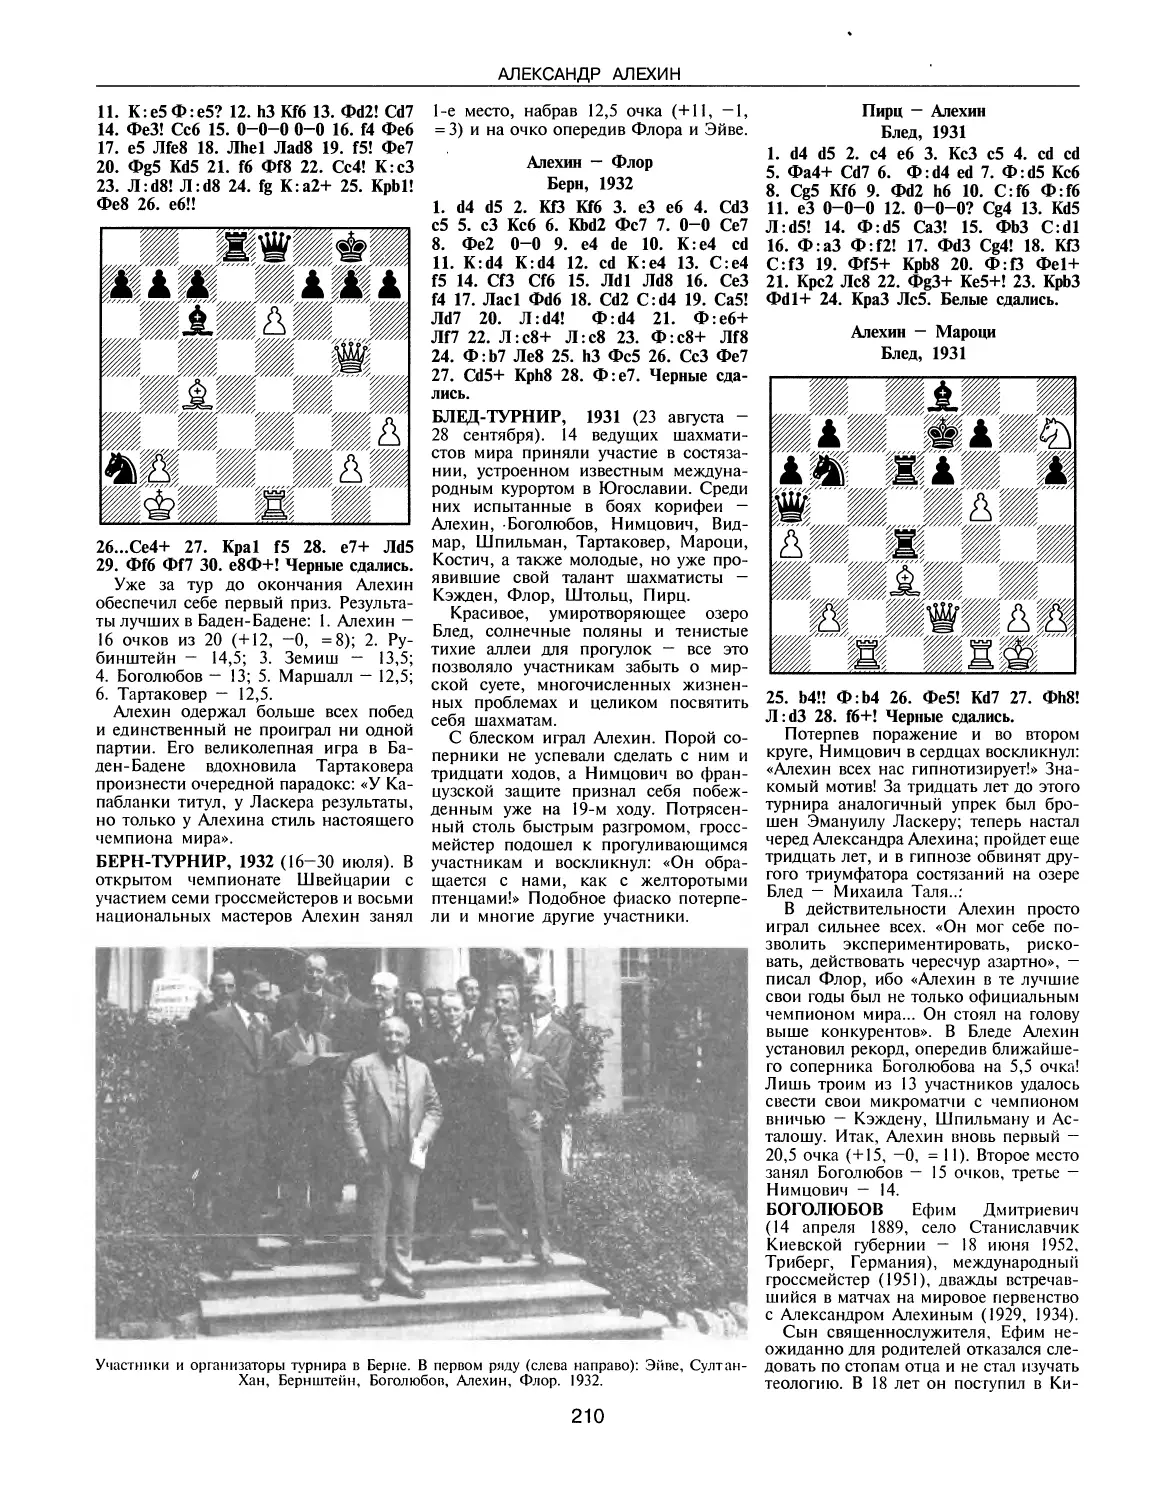 Берн-турнир, 1932
Блед-турнир, 1932
Боголюбов Е.